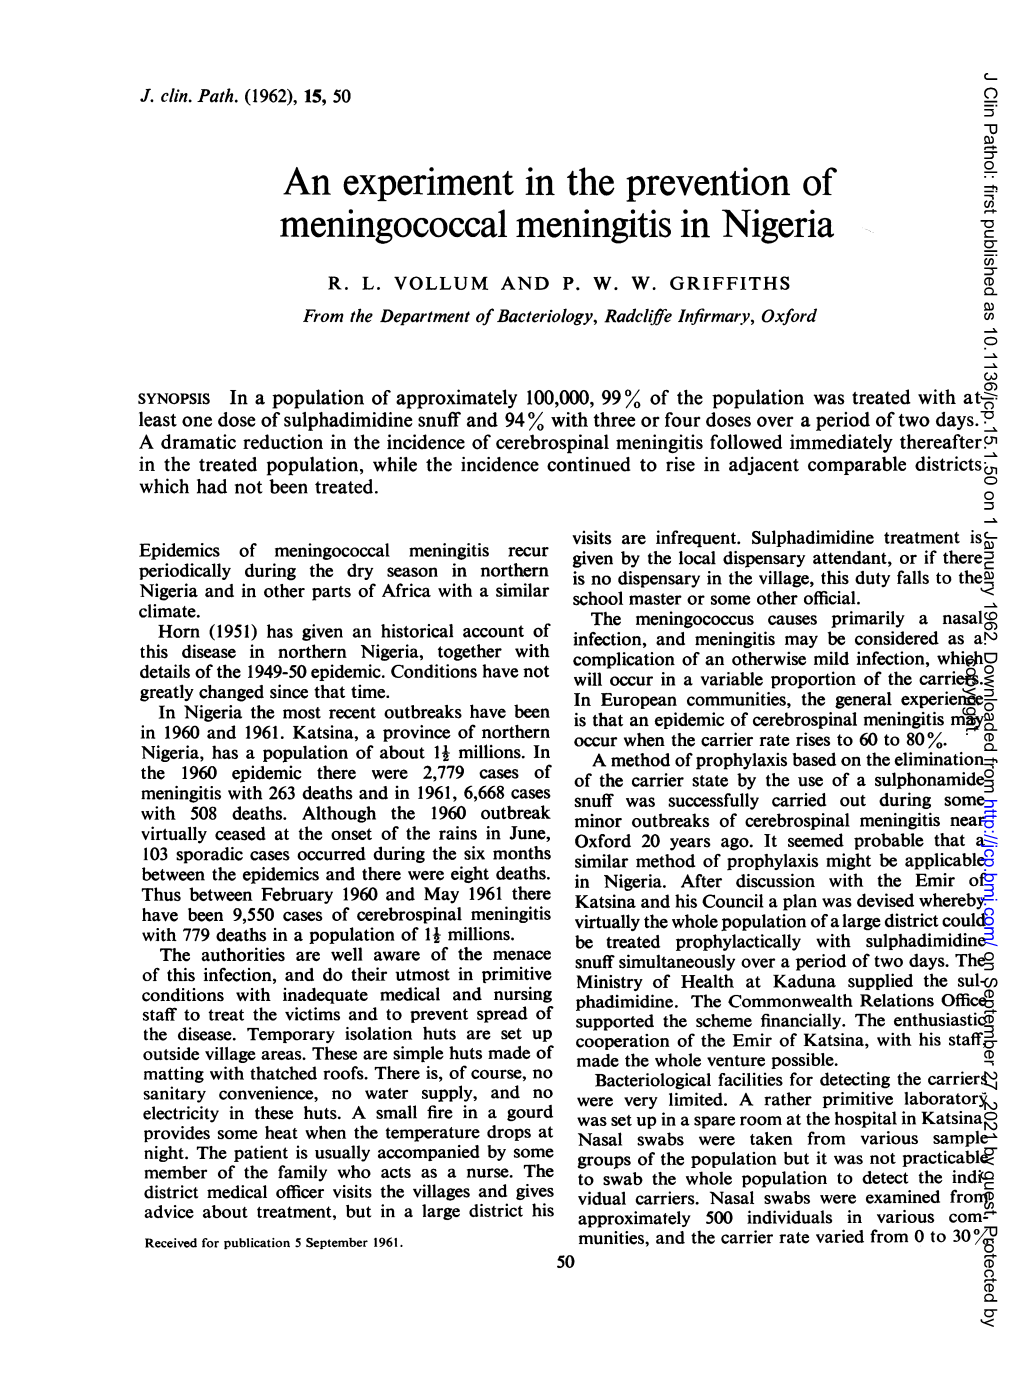 Meningococcal Meningitis in Nigeria